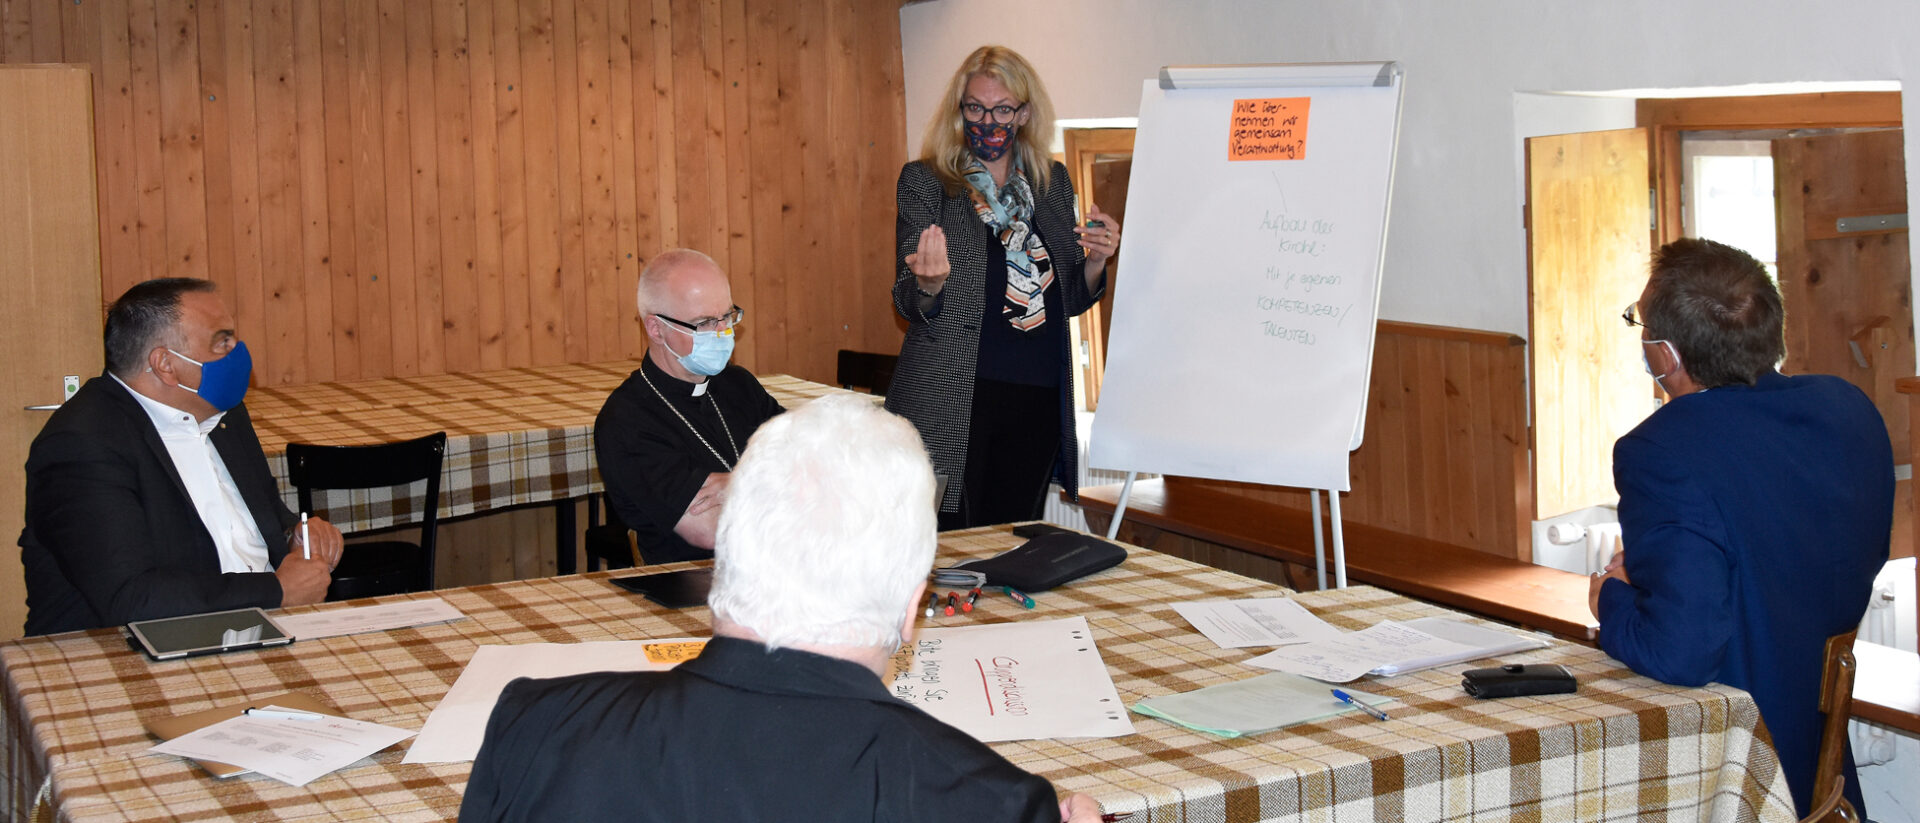 Workshop in Einsiedeln. Franziska Driessen-Reding stellt die Frage: Wie übernehmen wir gemeinsam Verantwortung?